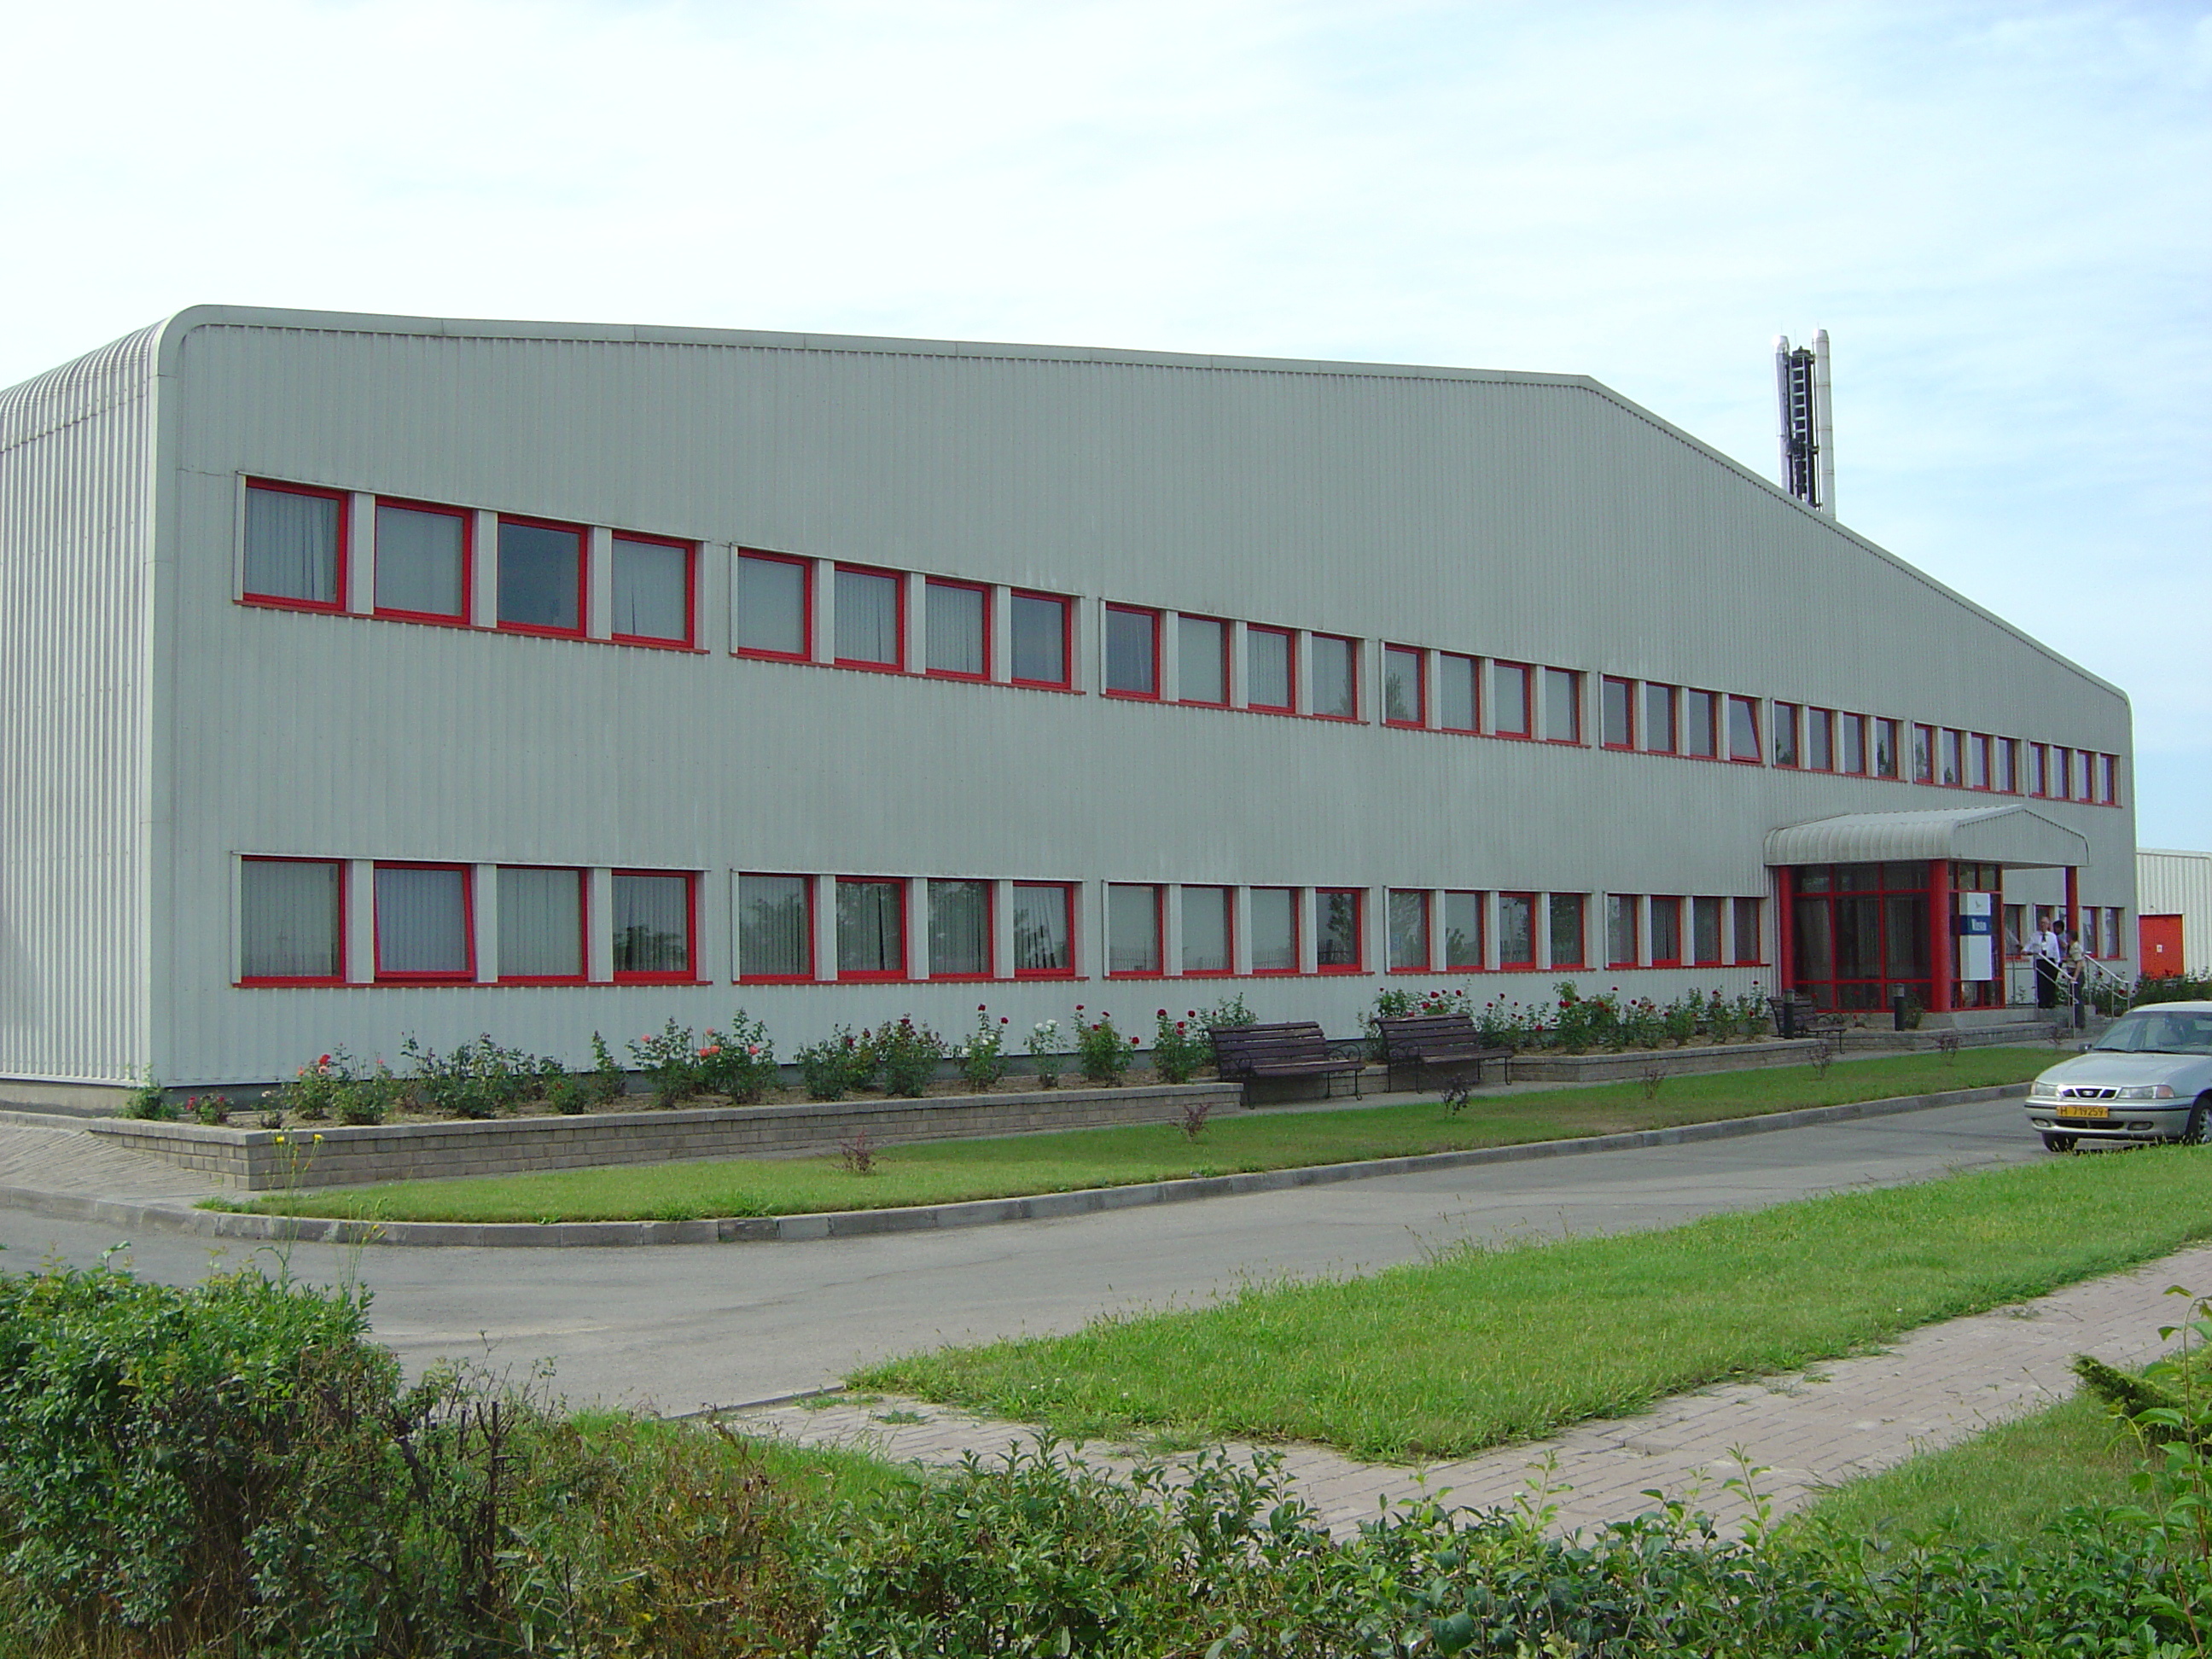 Gallaher Cigarette Manufacturing  Industrial  Factory Buildings  by REIDsteel